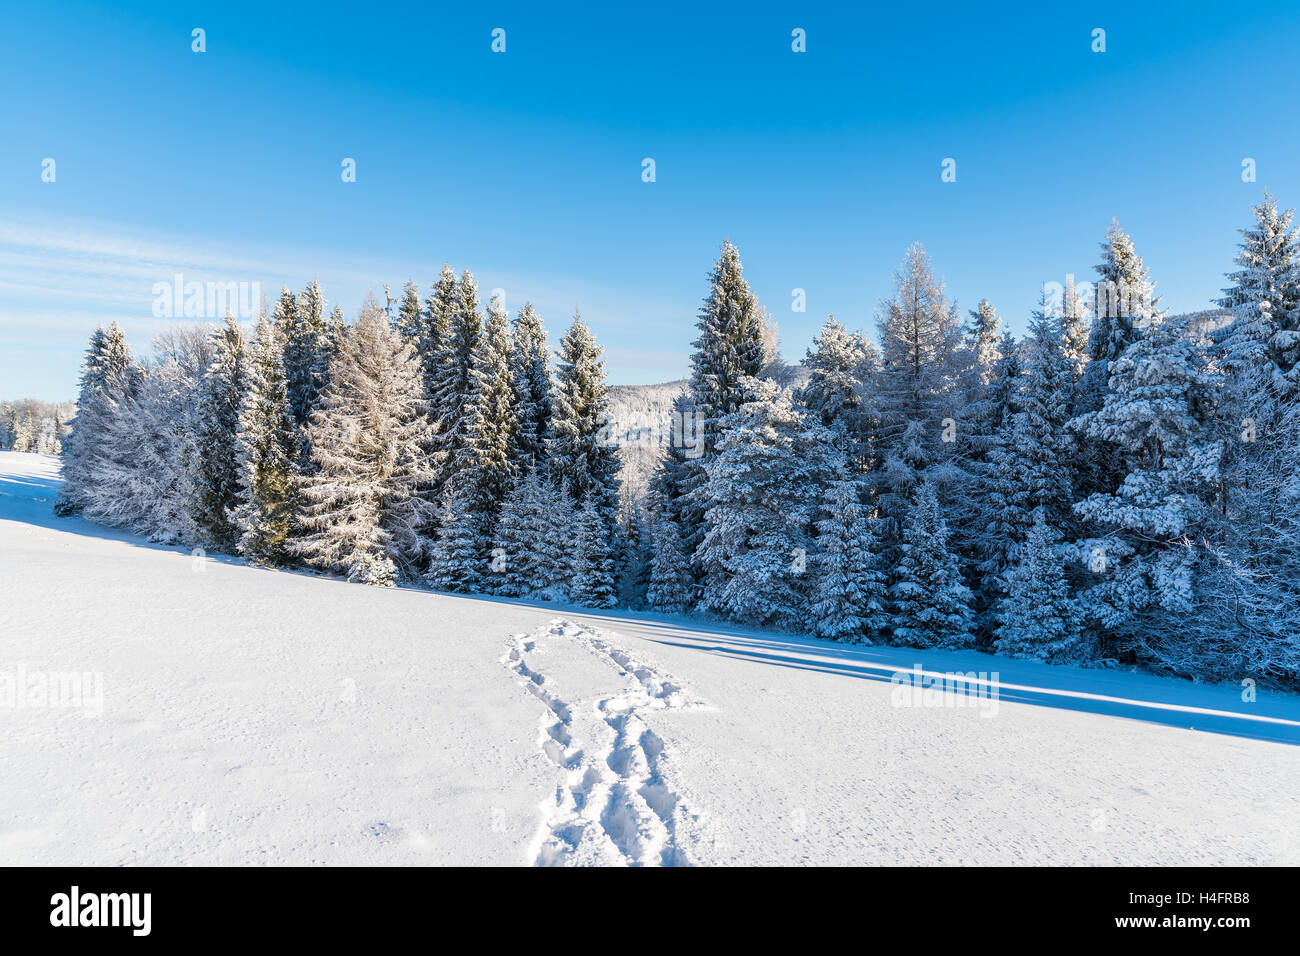 Chemin dans la neige sur journée ensoleillée en montagnes Beskid Sadecki, Pologne Banque D'Images